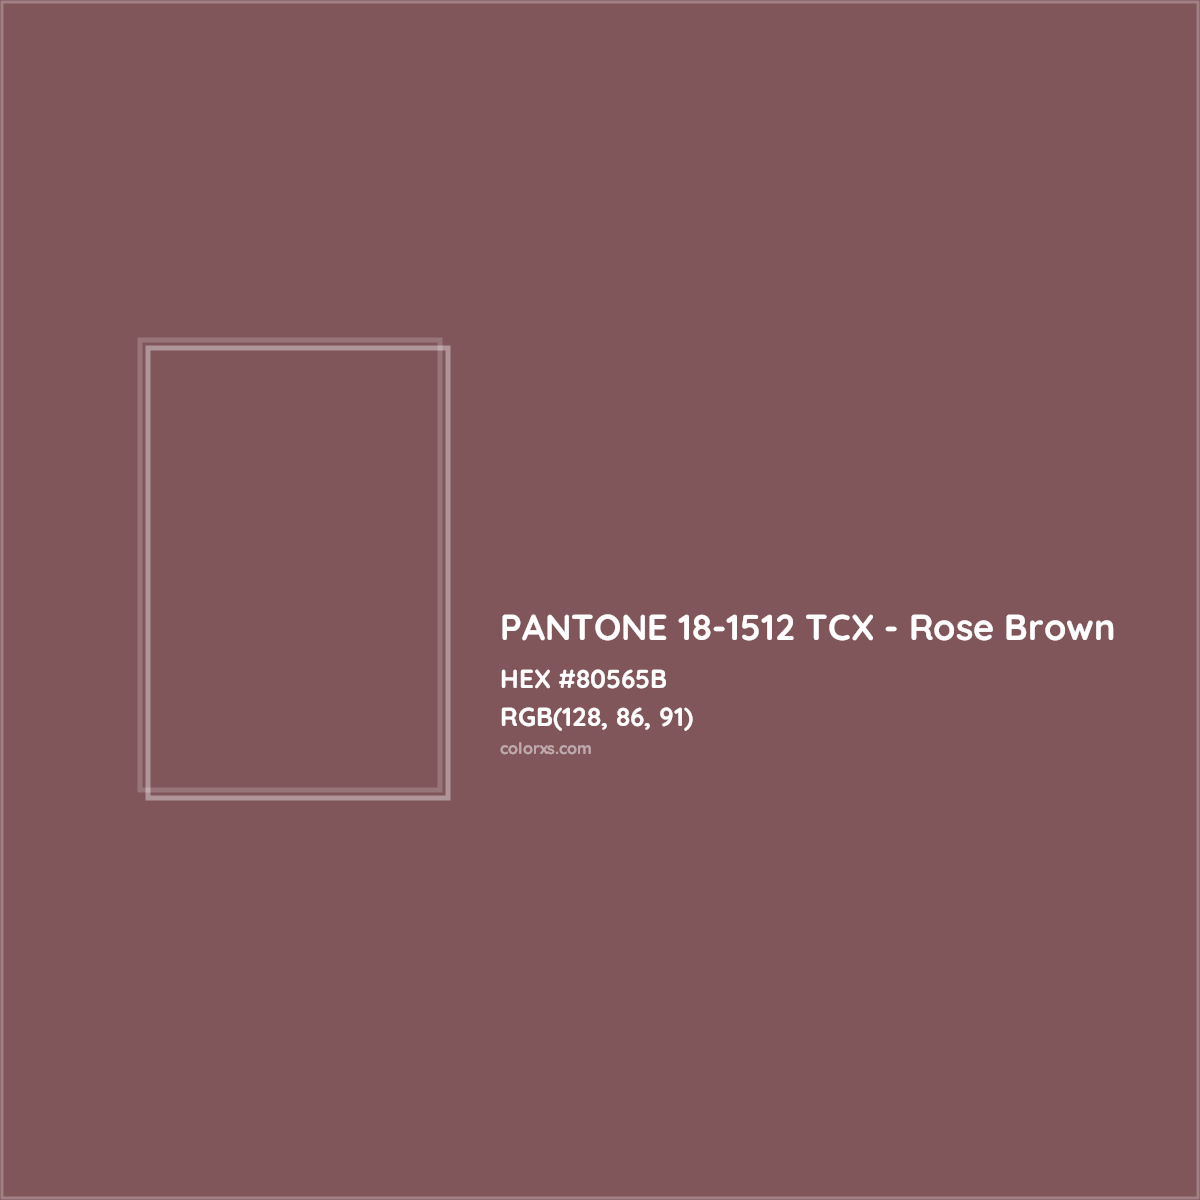 HEX #80565B PANTONE 18-1512 TCX - Rose Brown CMS Pantone TCX - Color Code